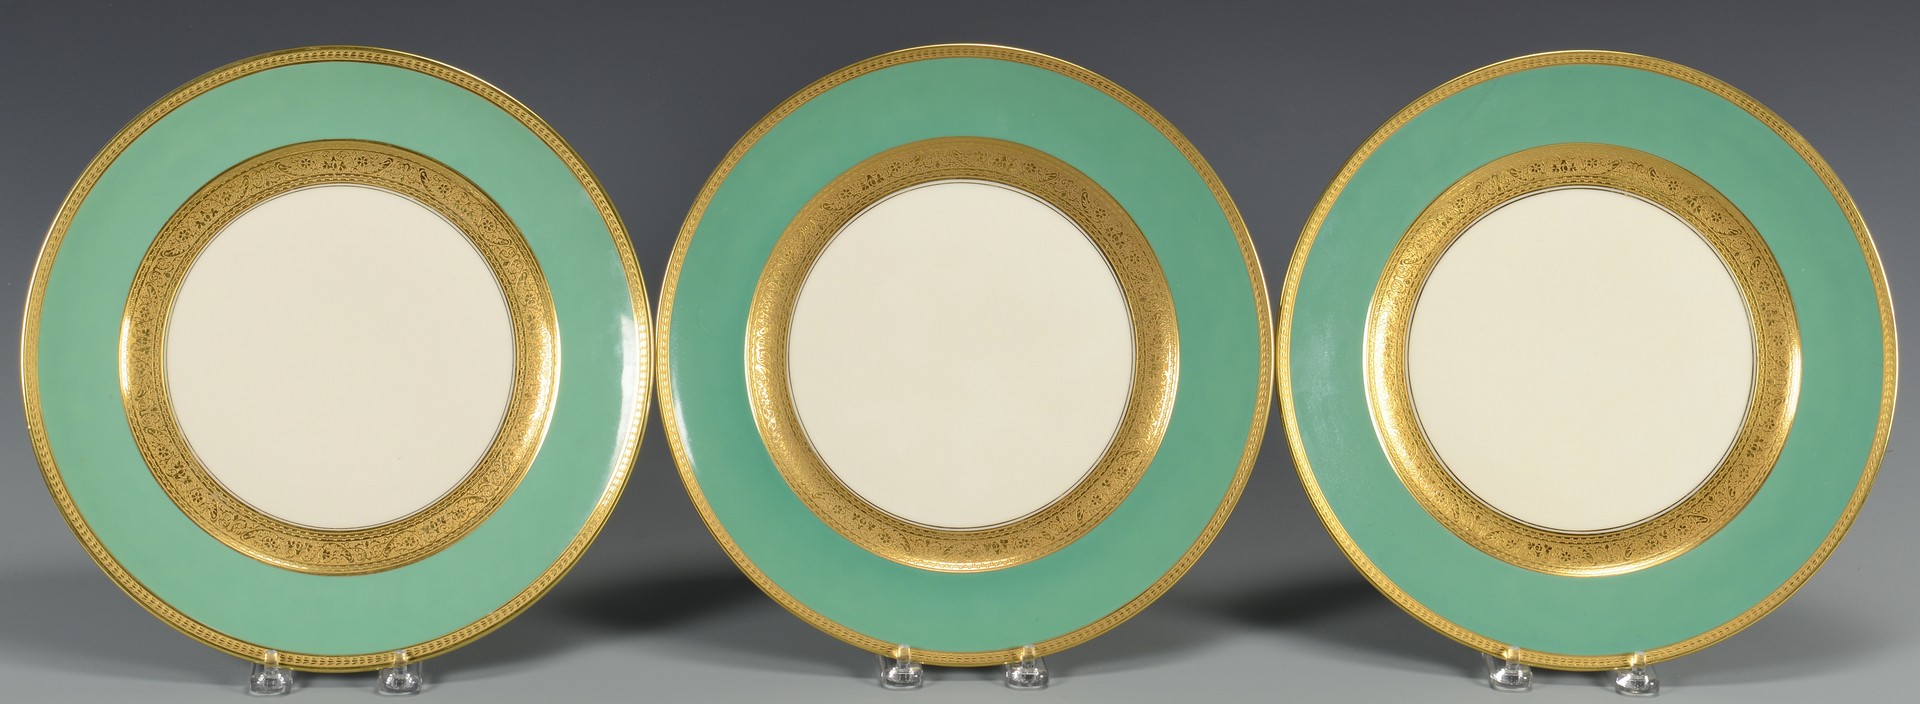 Lot 768: 8 Rosenthal Green, Gilt Dinner Plates